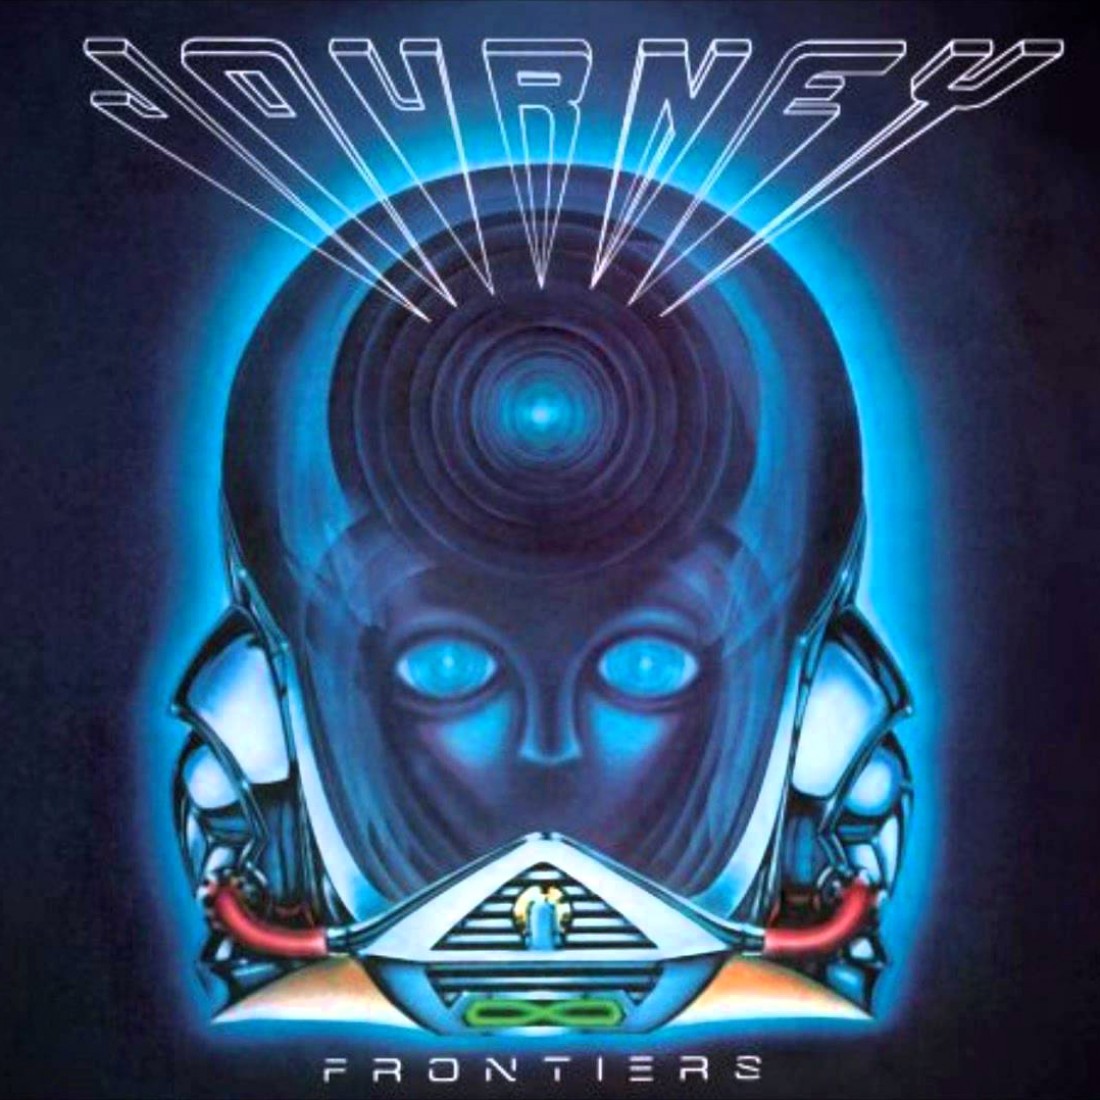 Frontiers (Journey album) - Wikipedia